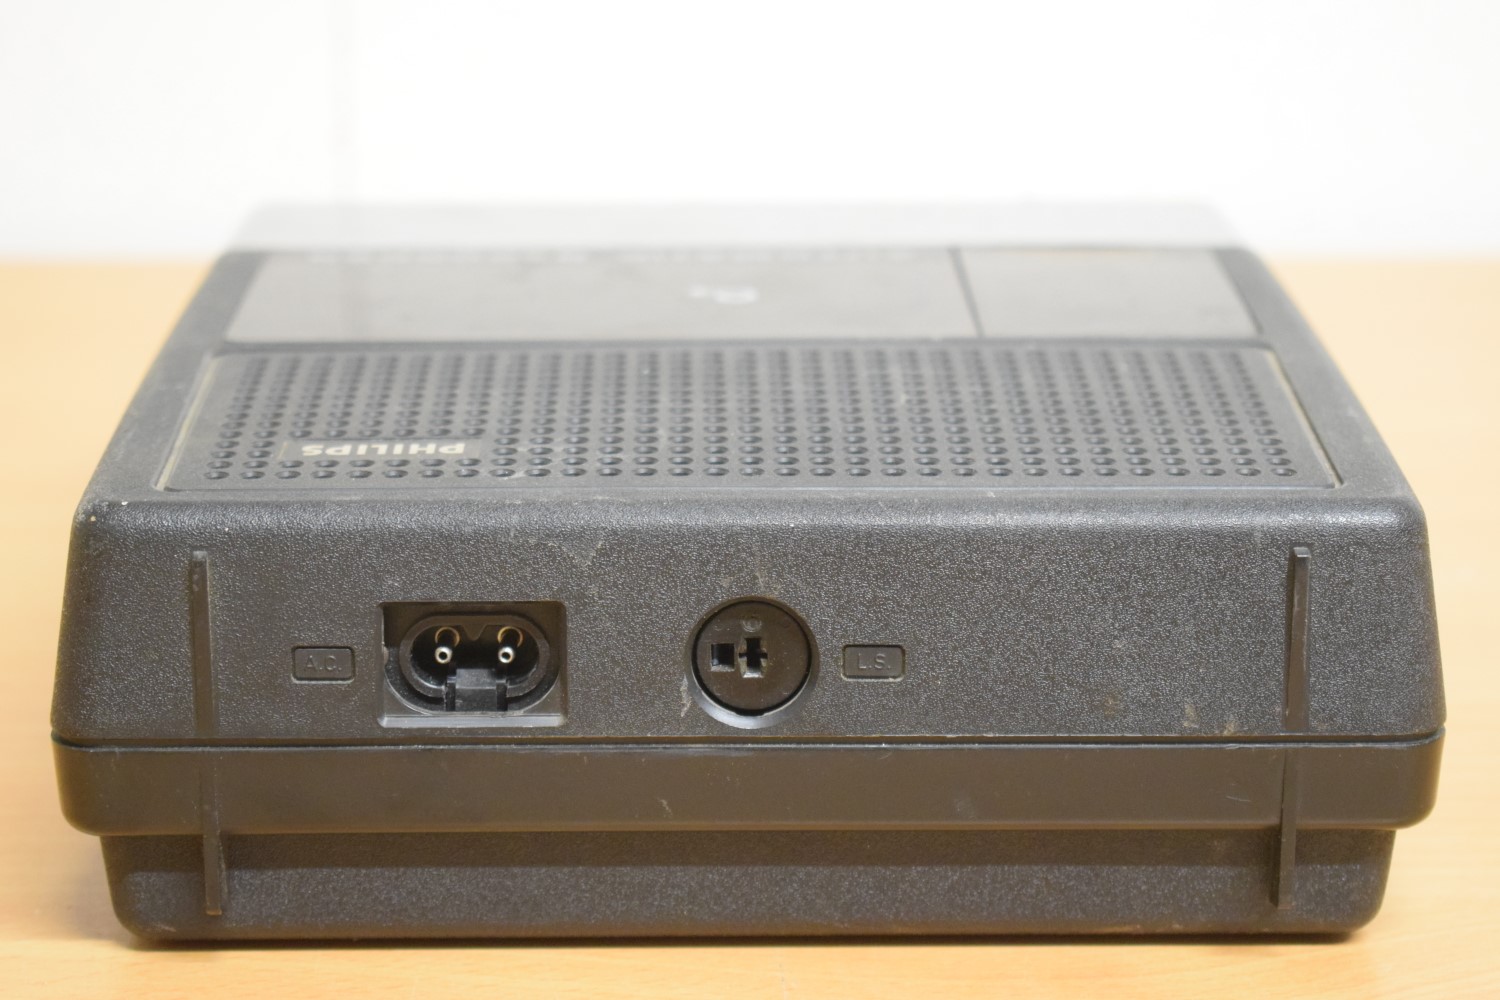 Philips N2221 Draagbaar cassettedeck